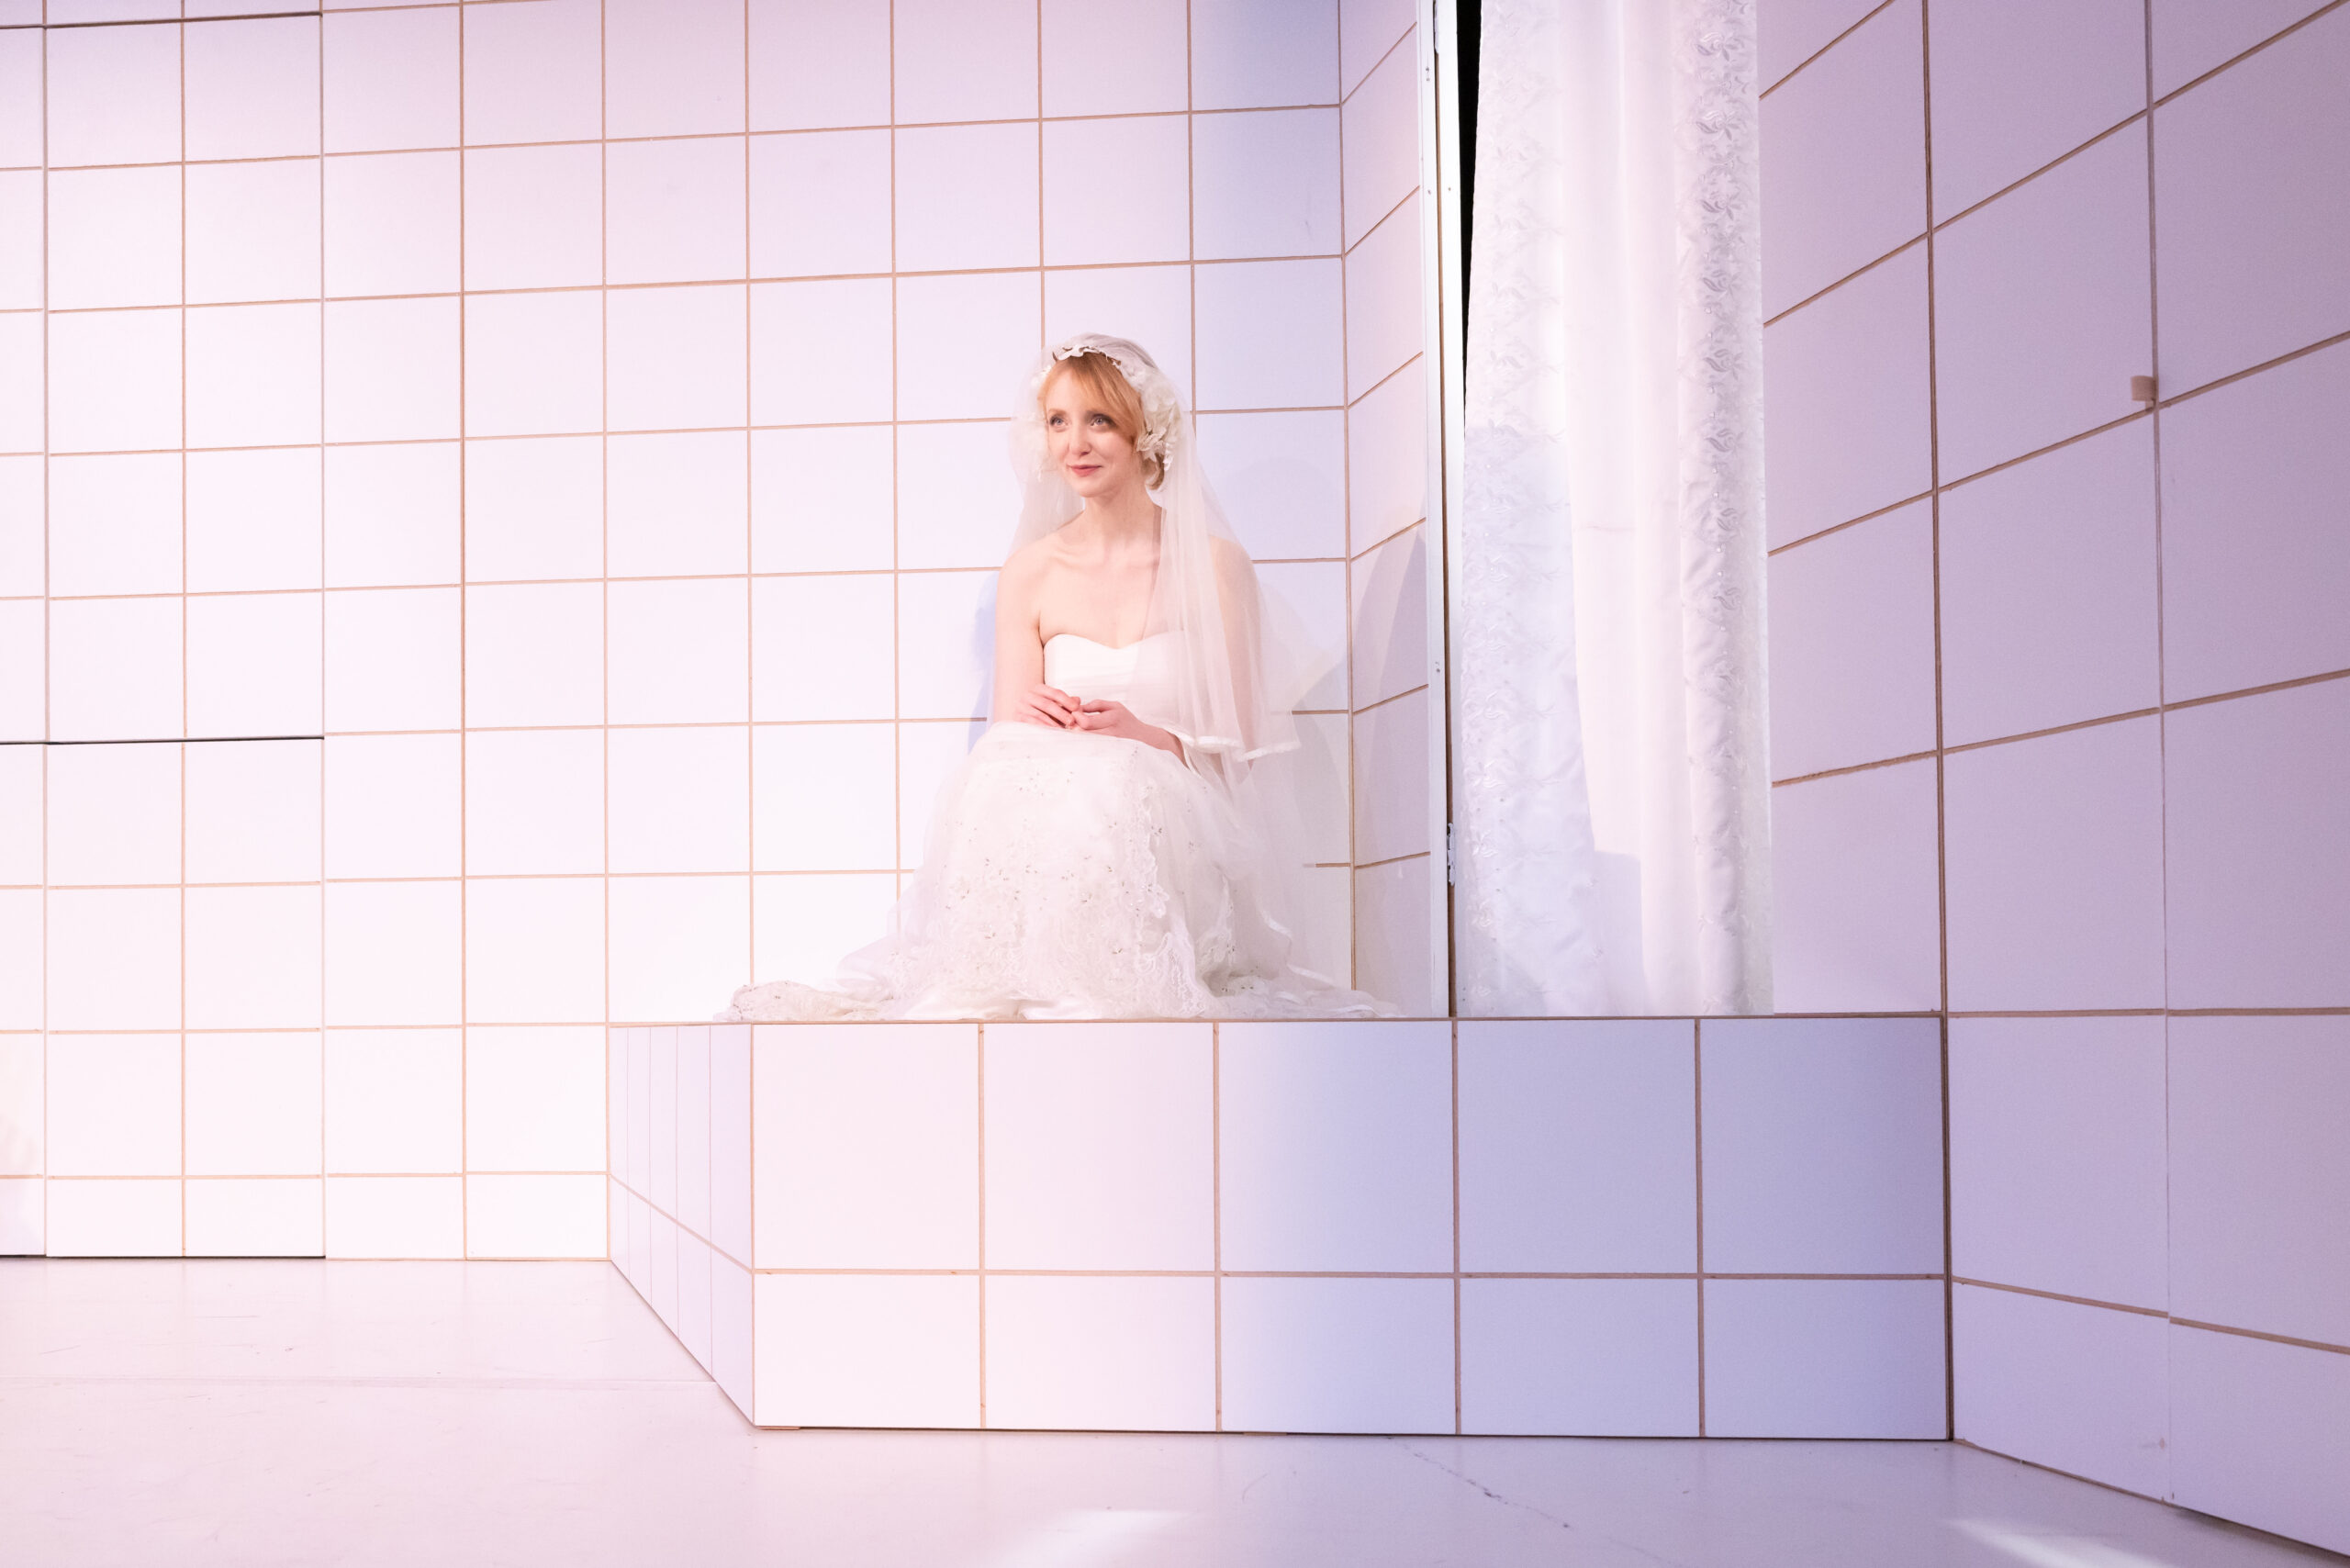 Frau im weißen Hochzeitskleid sitzt auf dem Boden eines komplett weiß gekachelten Raums